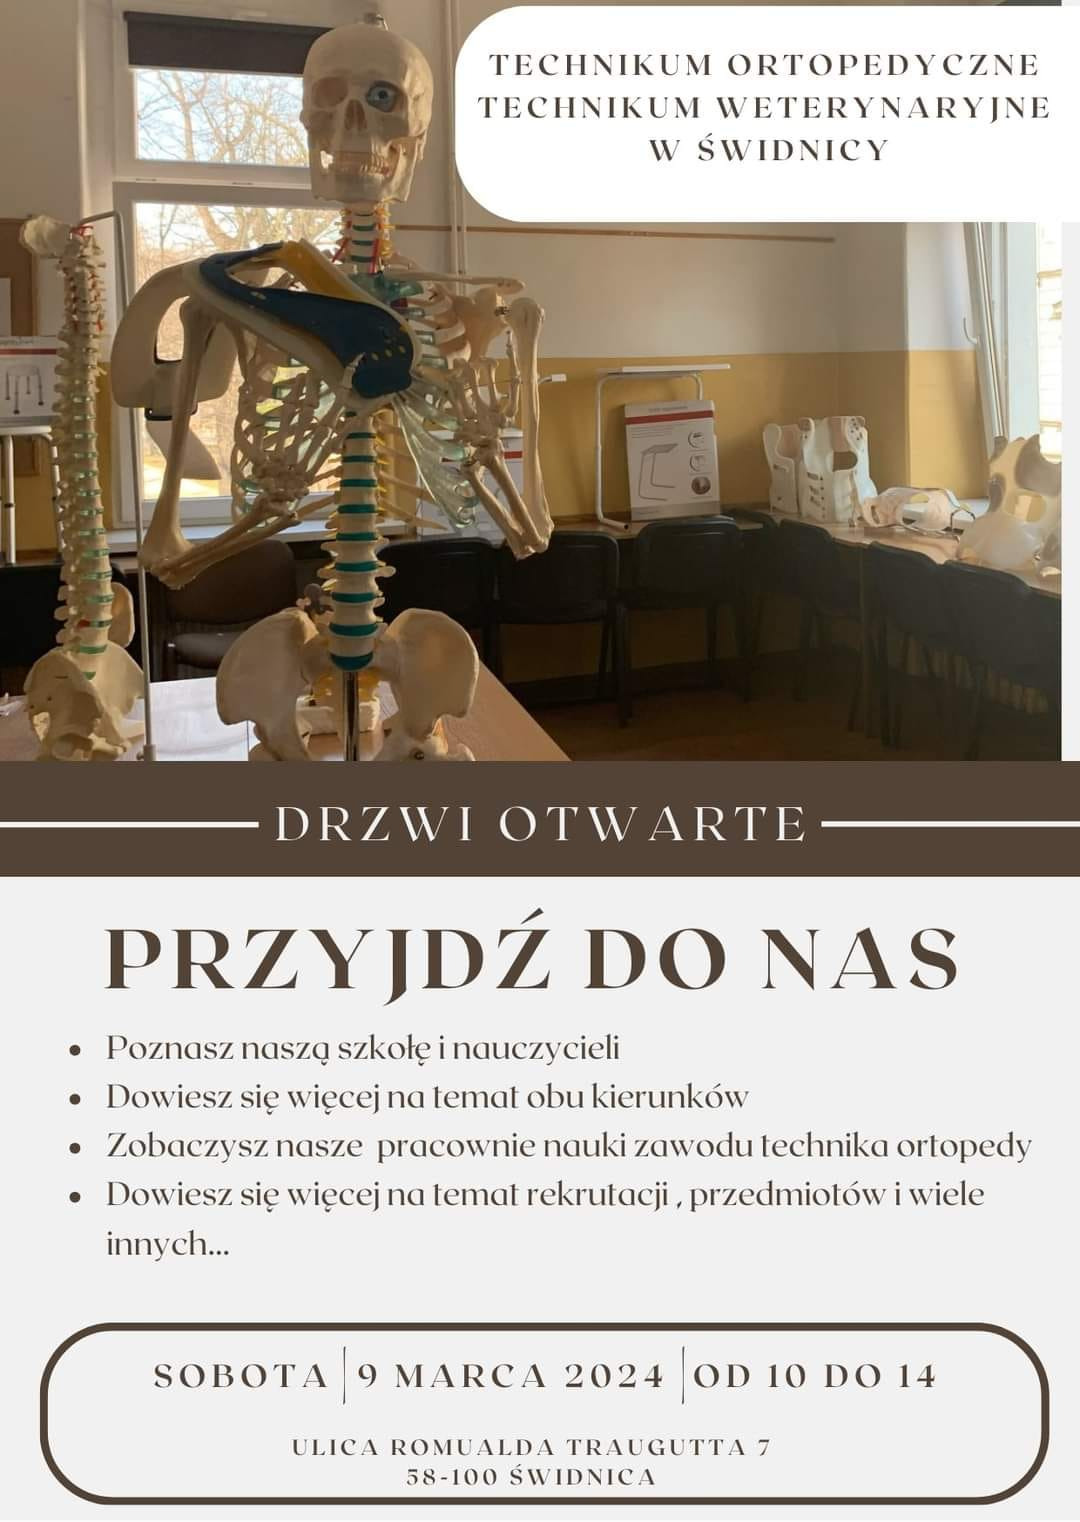 Prezentacja Technikum ortopedycznego i weterynaryjnego w Świdnicy - Obrazek 1